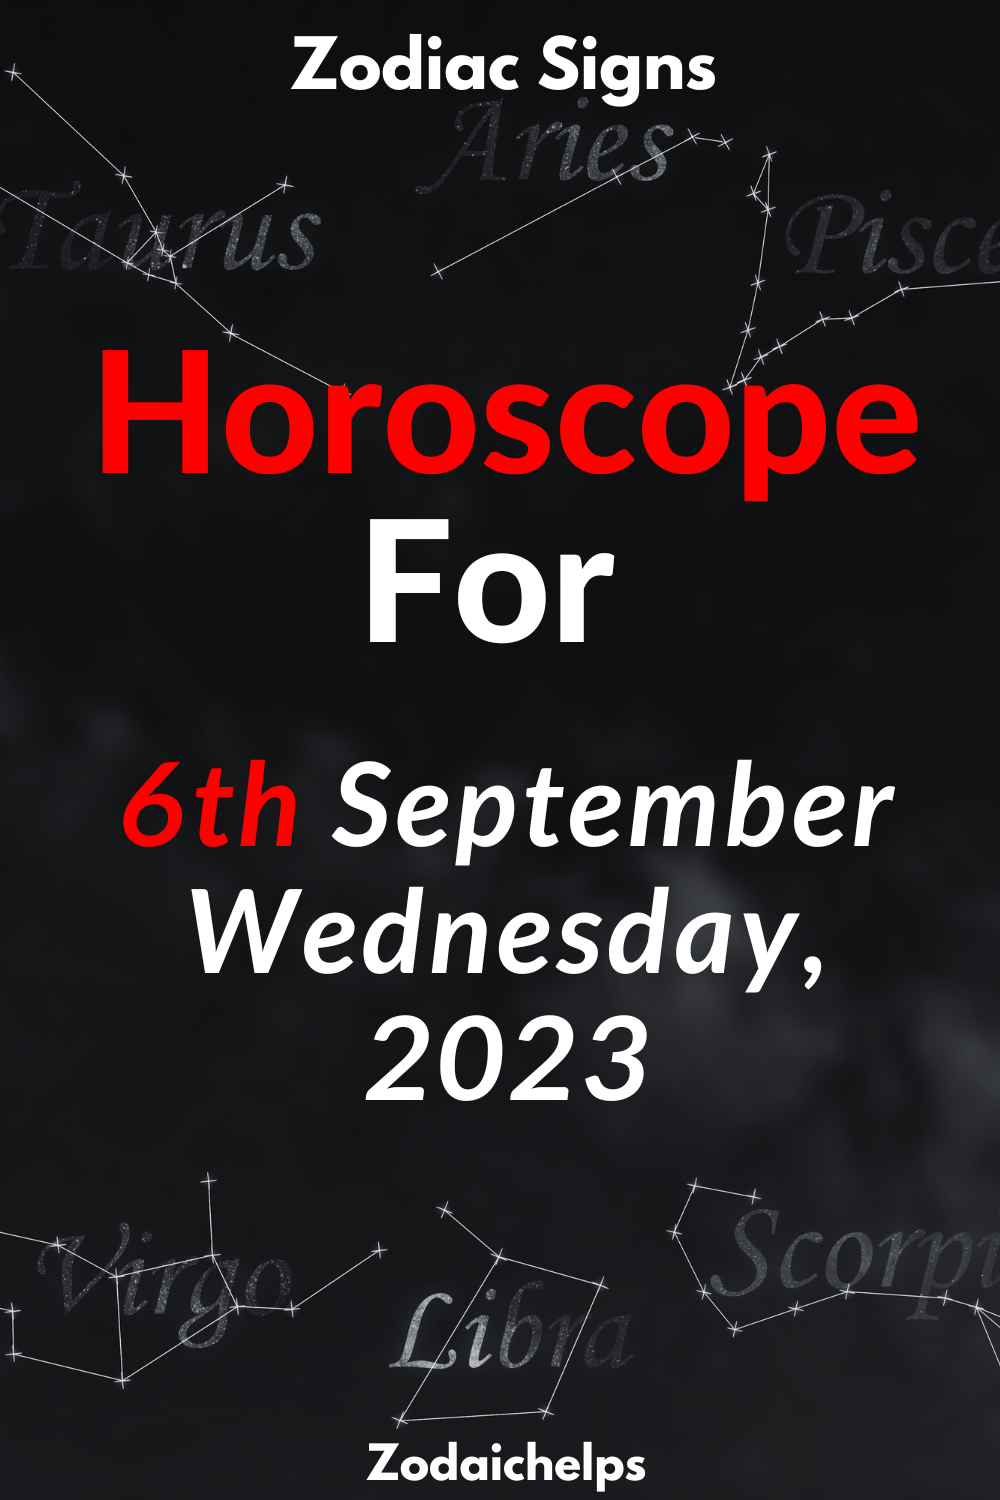 Horoscope for 6th September Wednesday, 2023